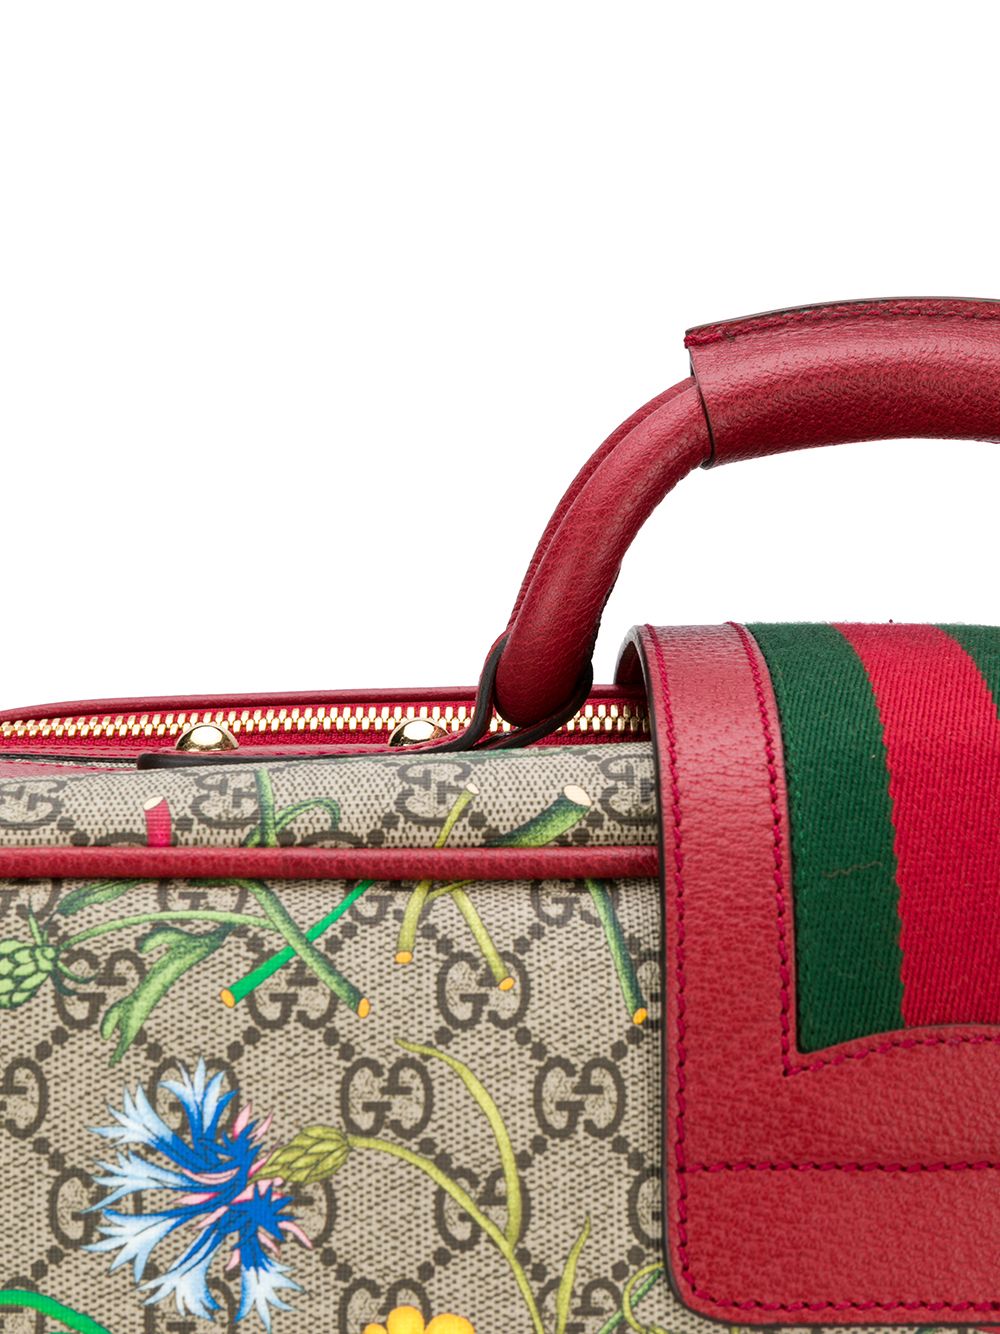 фото Gucci чемодан с цветочным узором